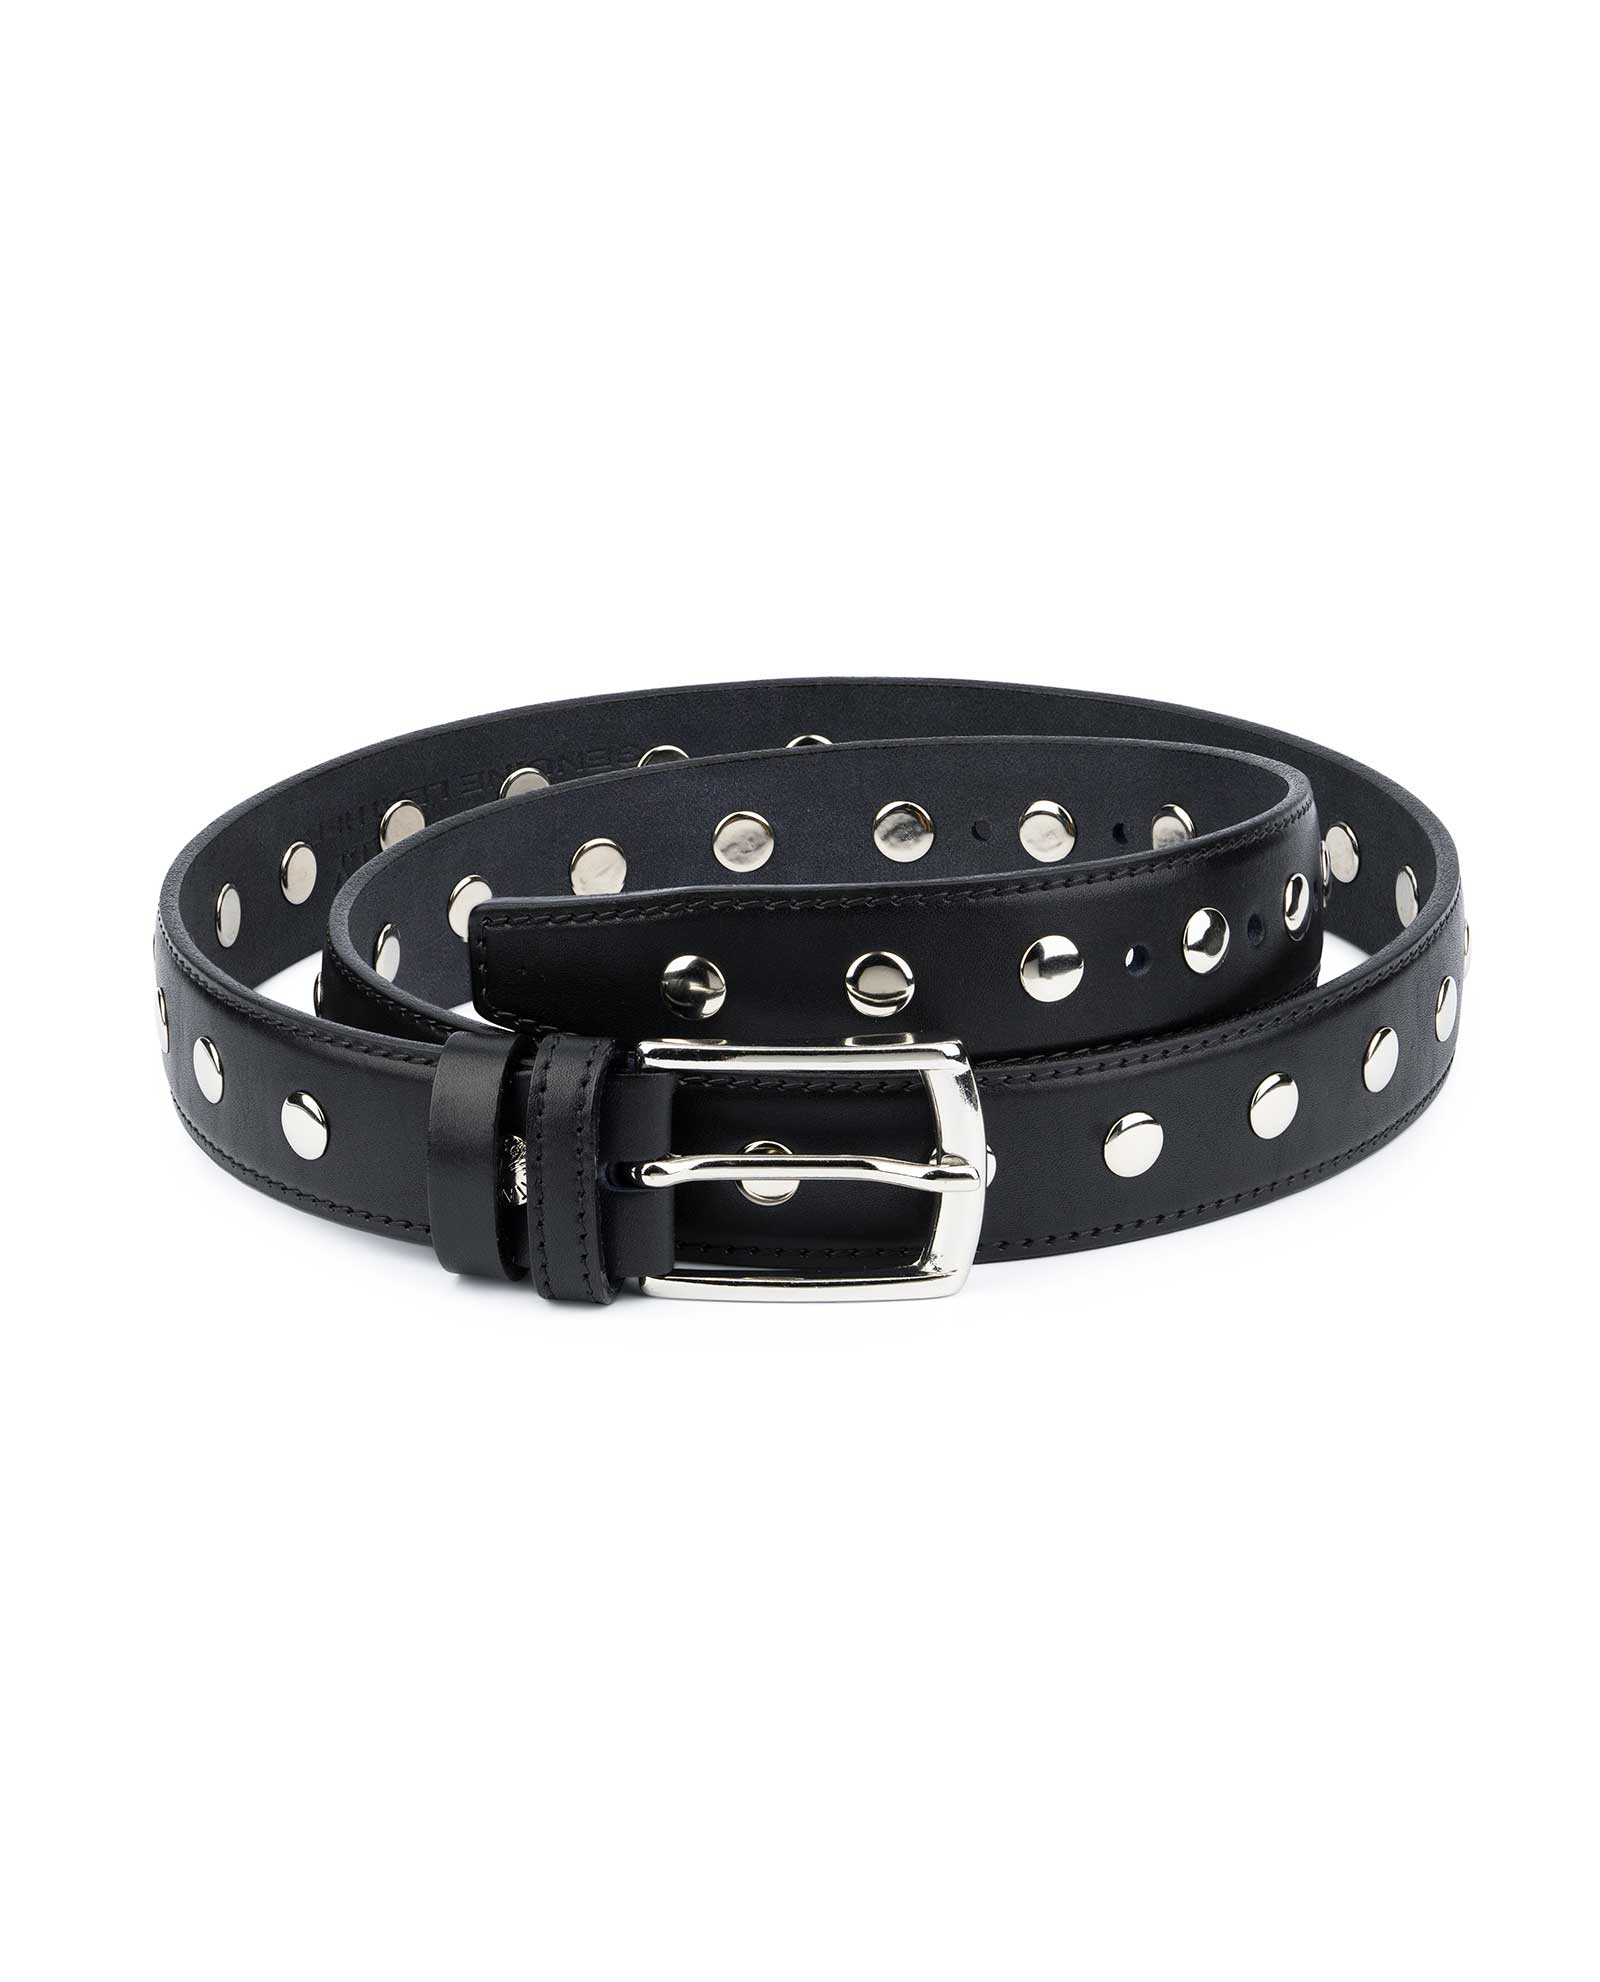 Buy Black Studded Belt | Full Grain Leather | Capo Pelle